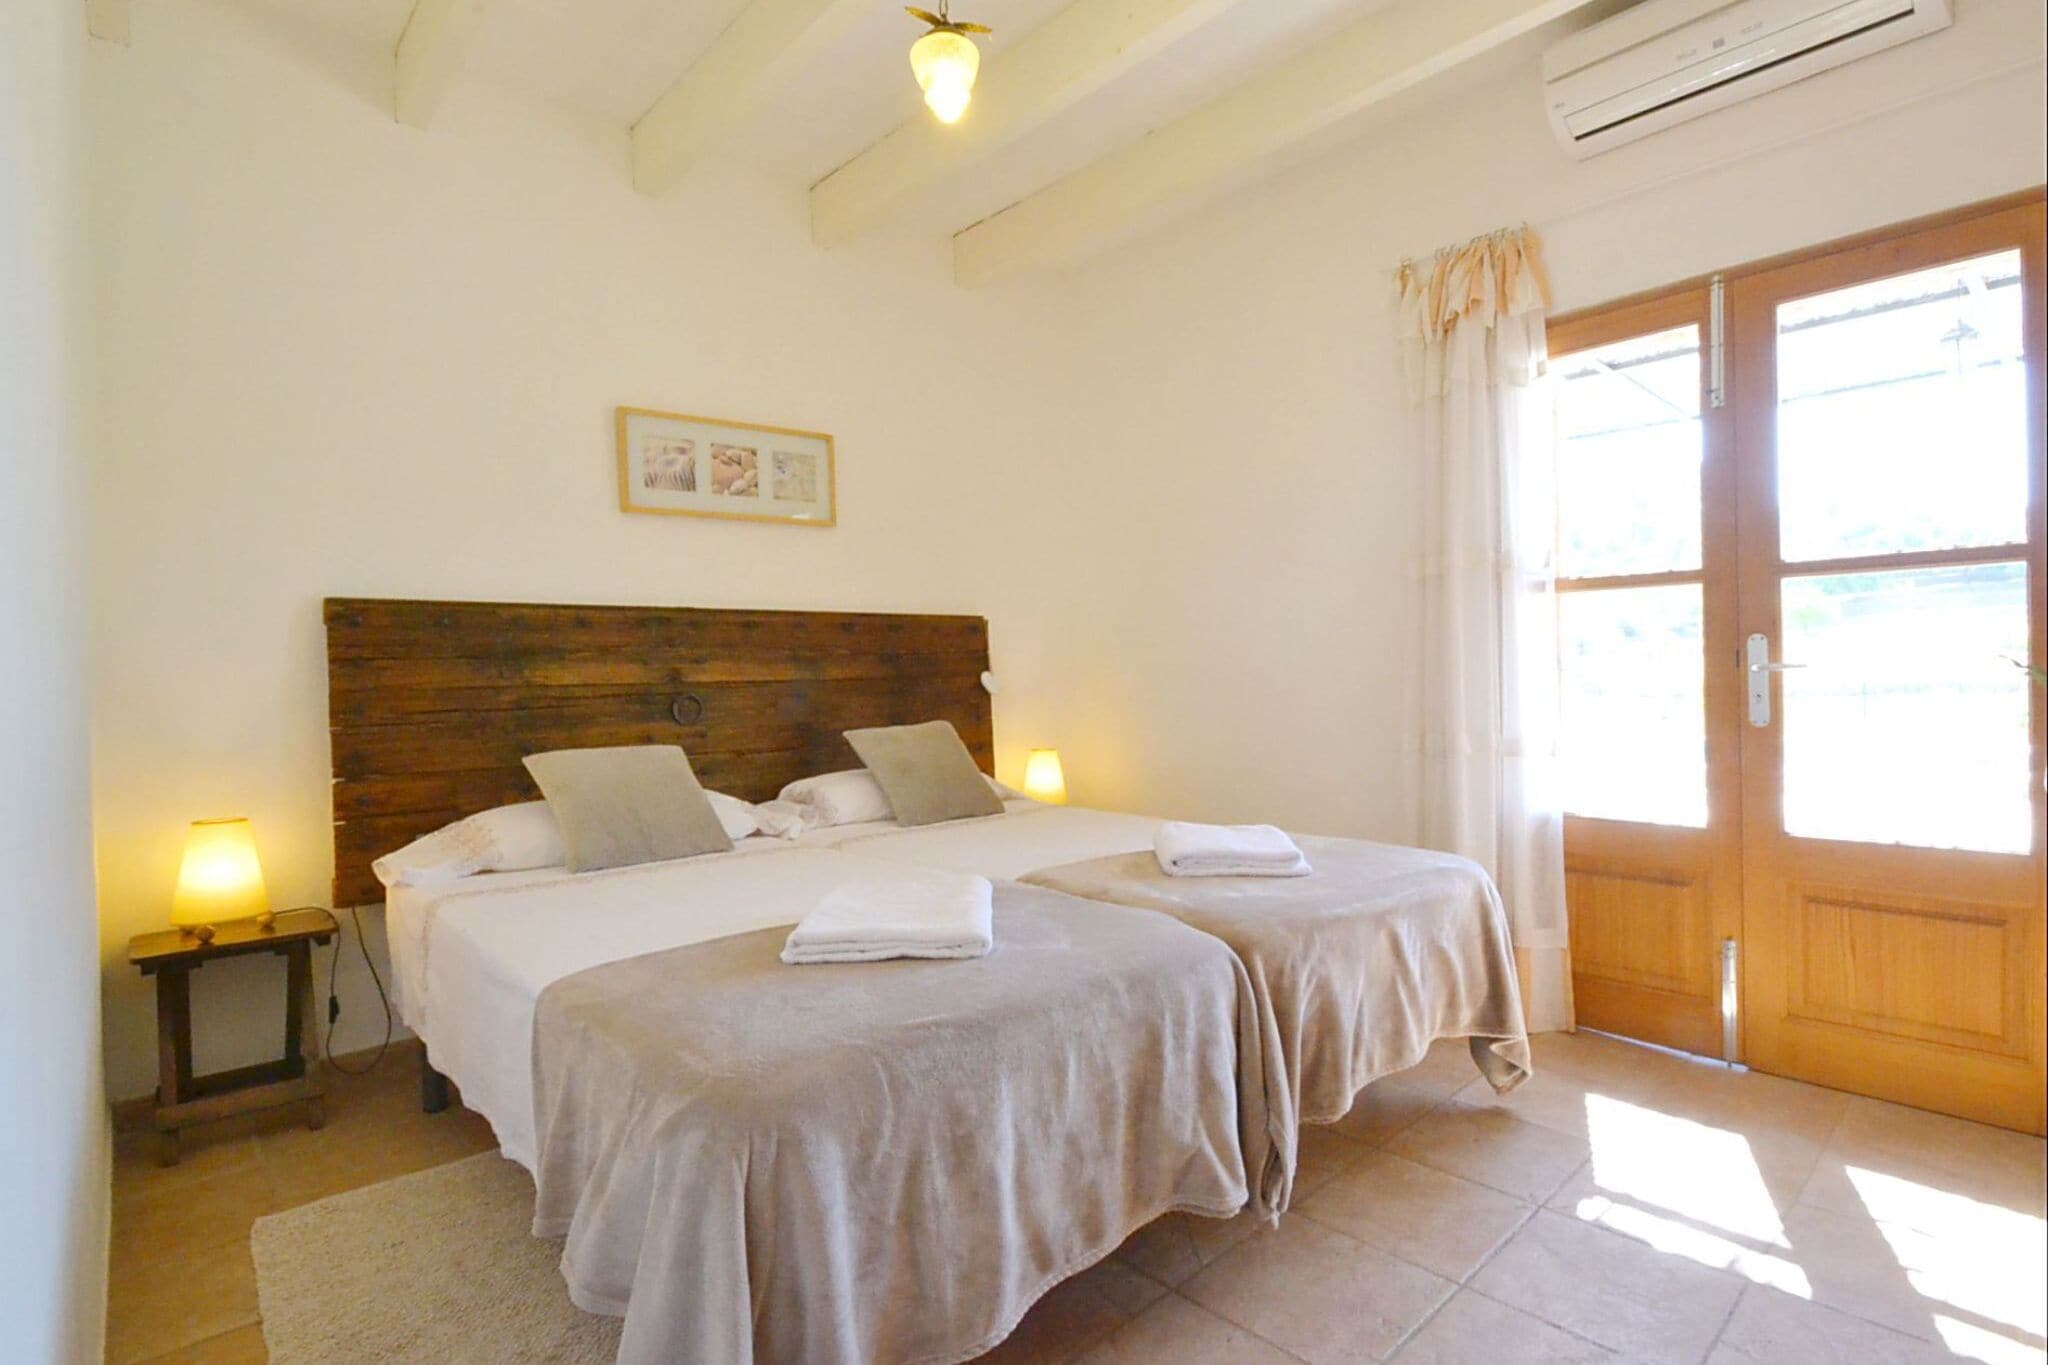 Gezellig vakantiehuis met privé zwembad met uitzicht op het Tramuntana gebergte